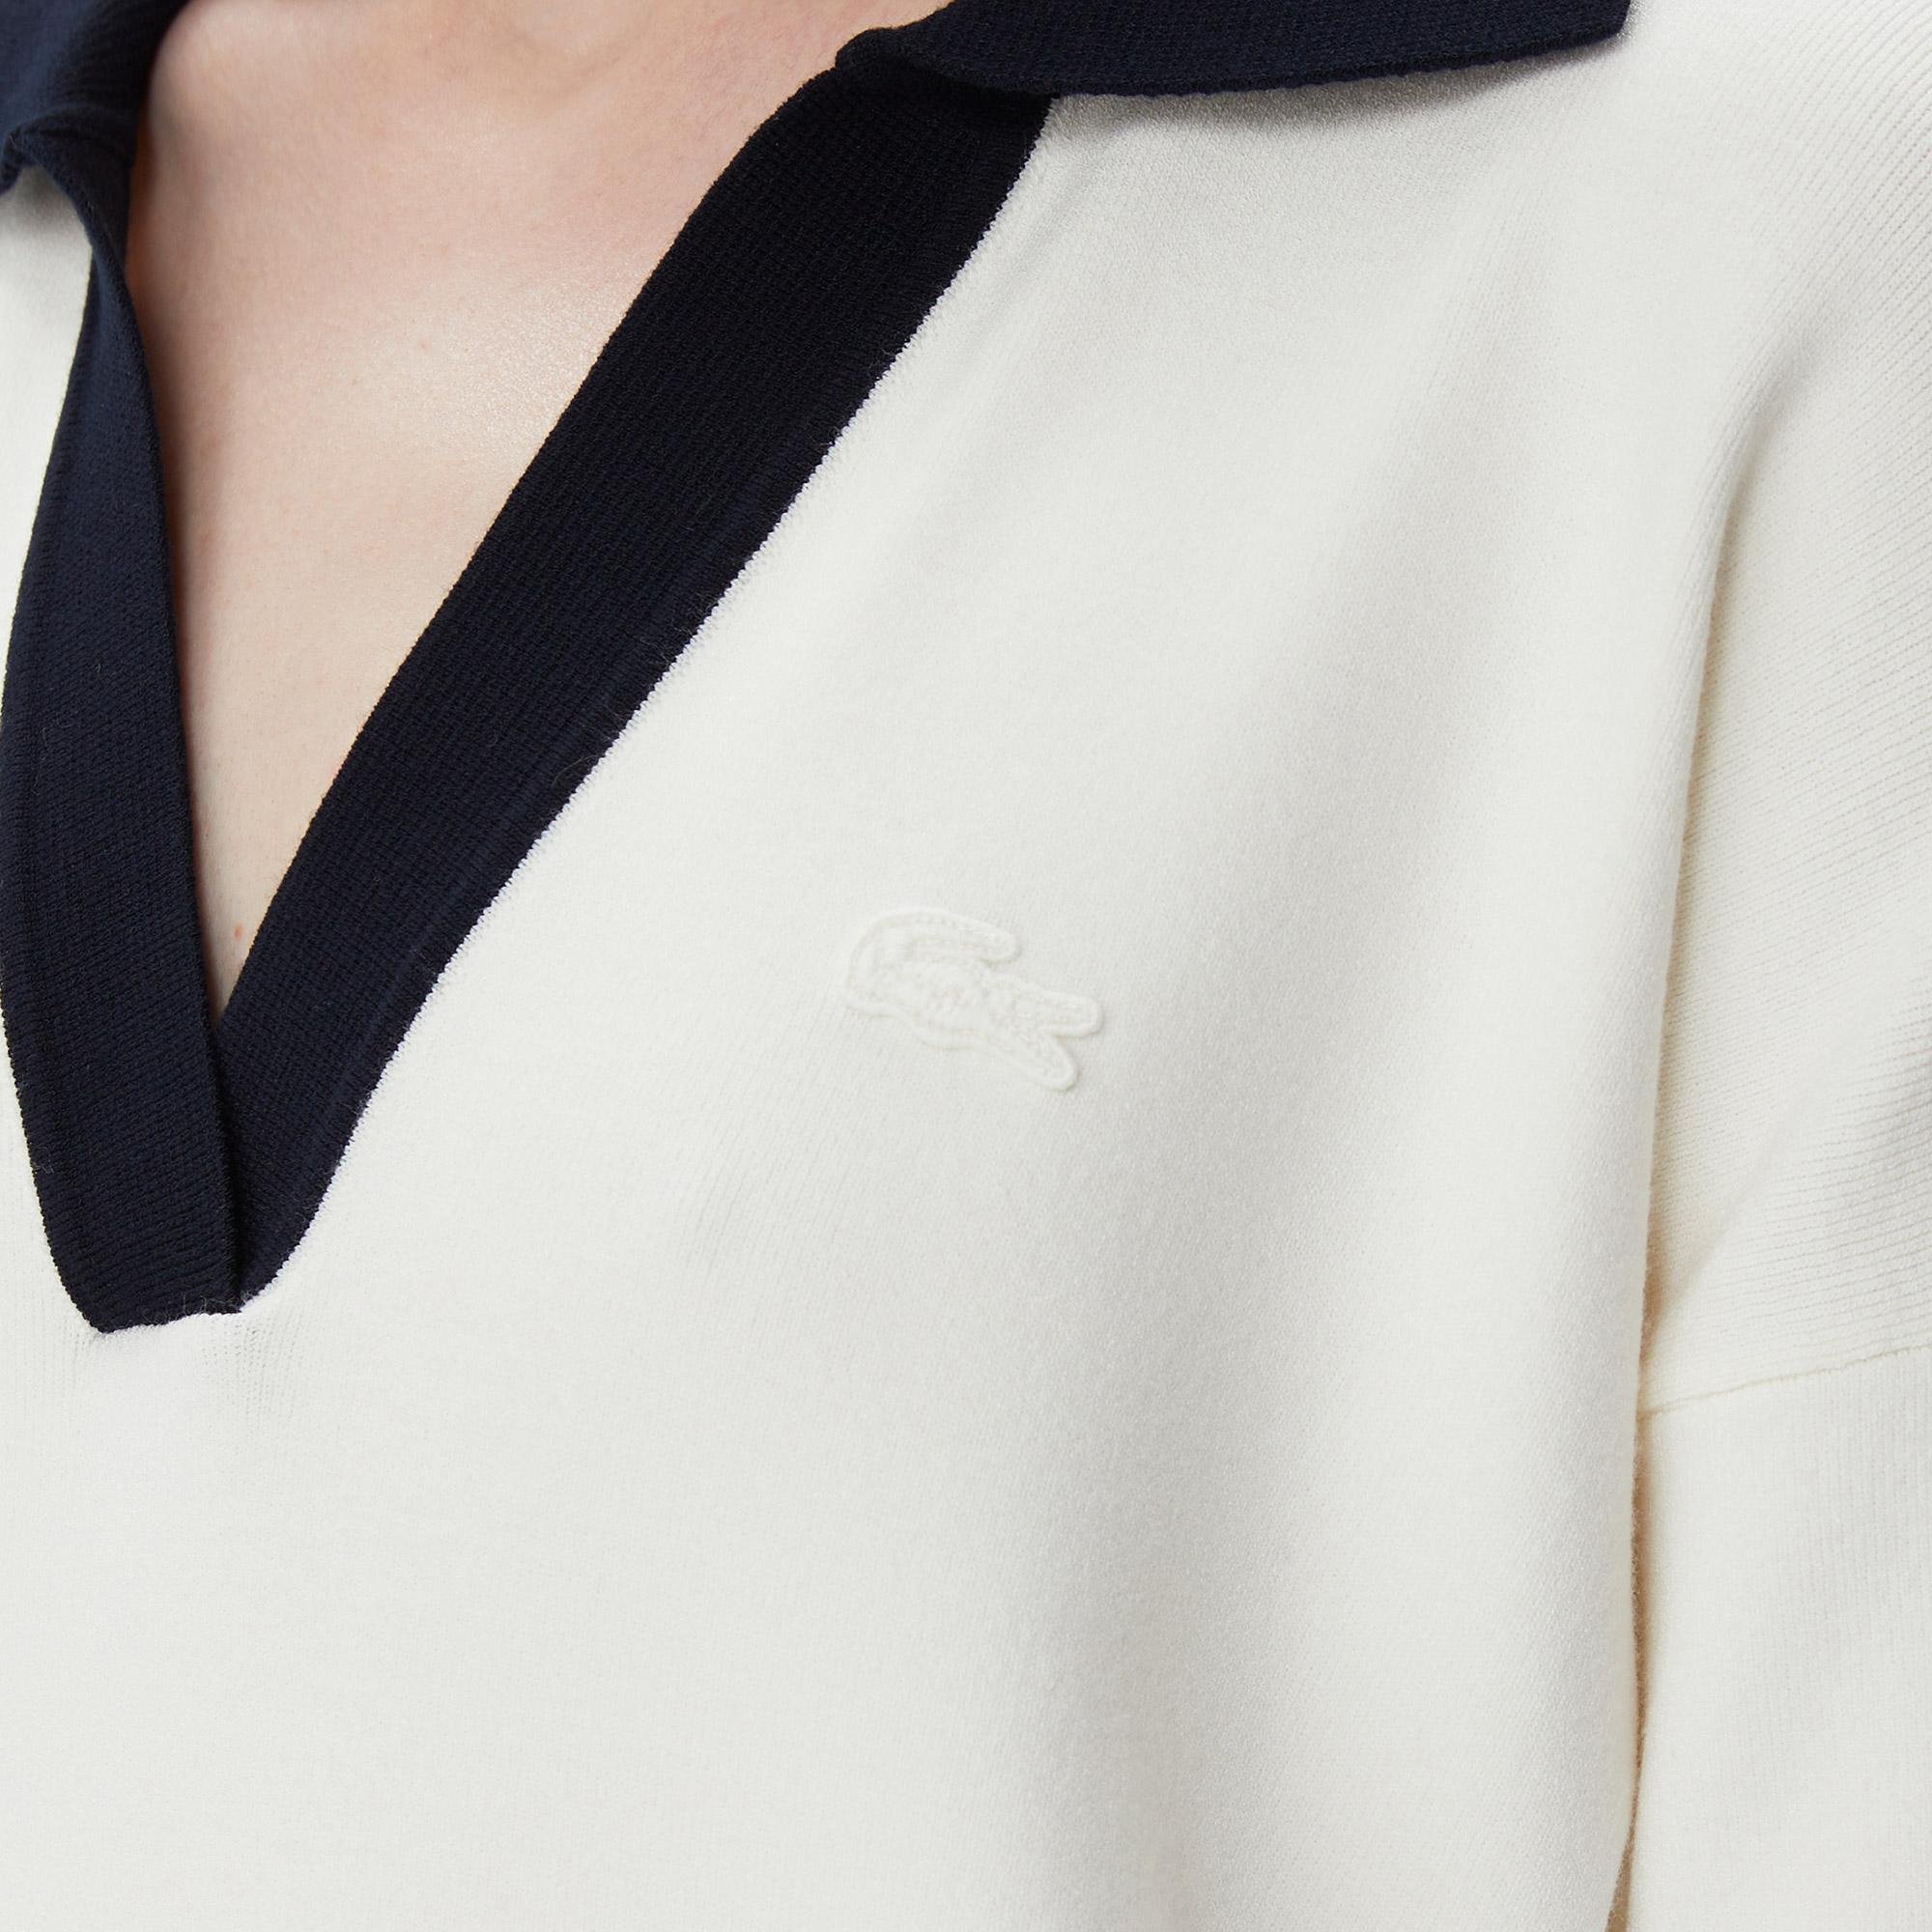 Lacoste dámský vlněný svetr s výstřihem do V